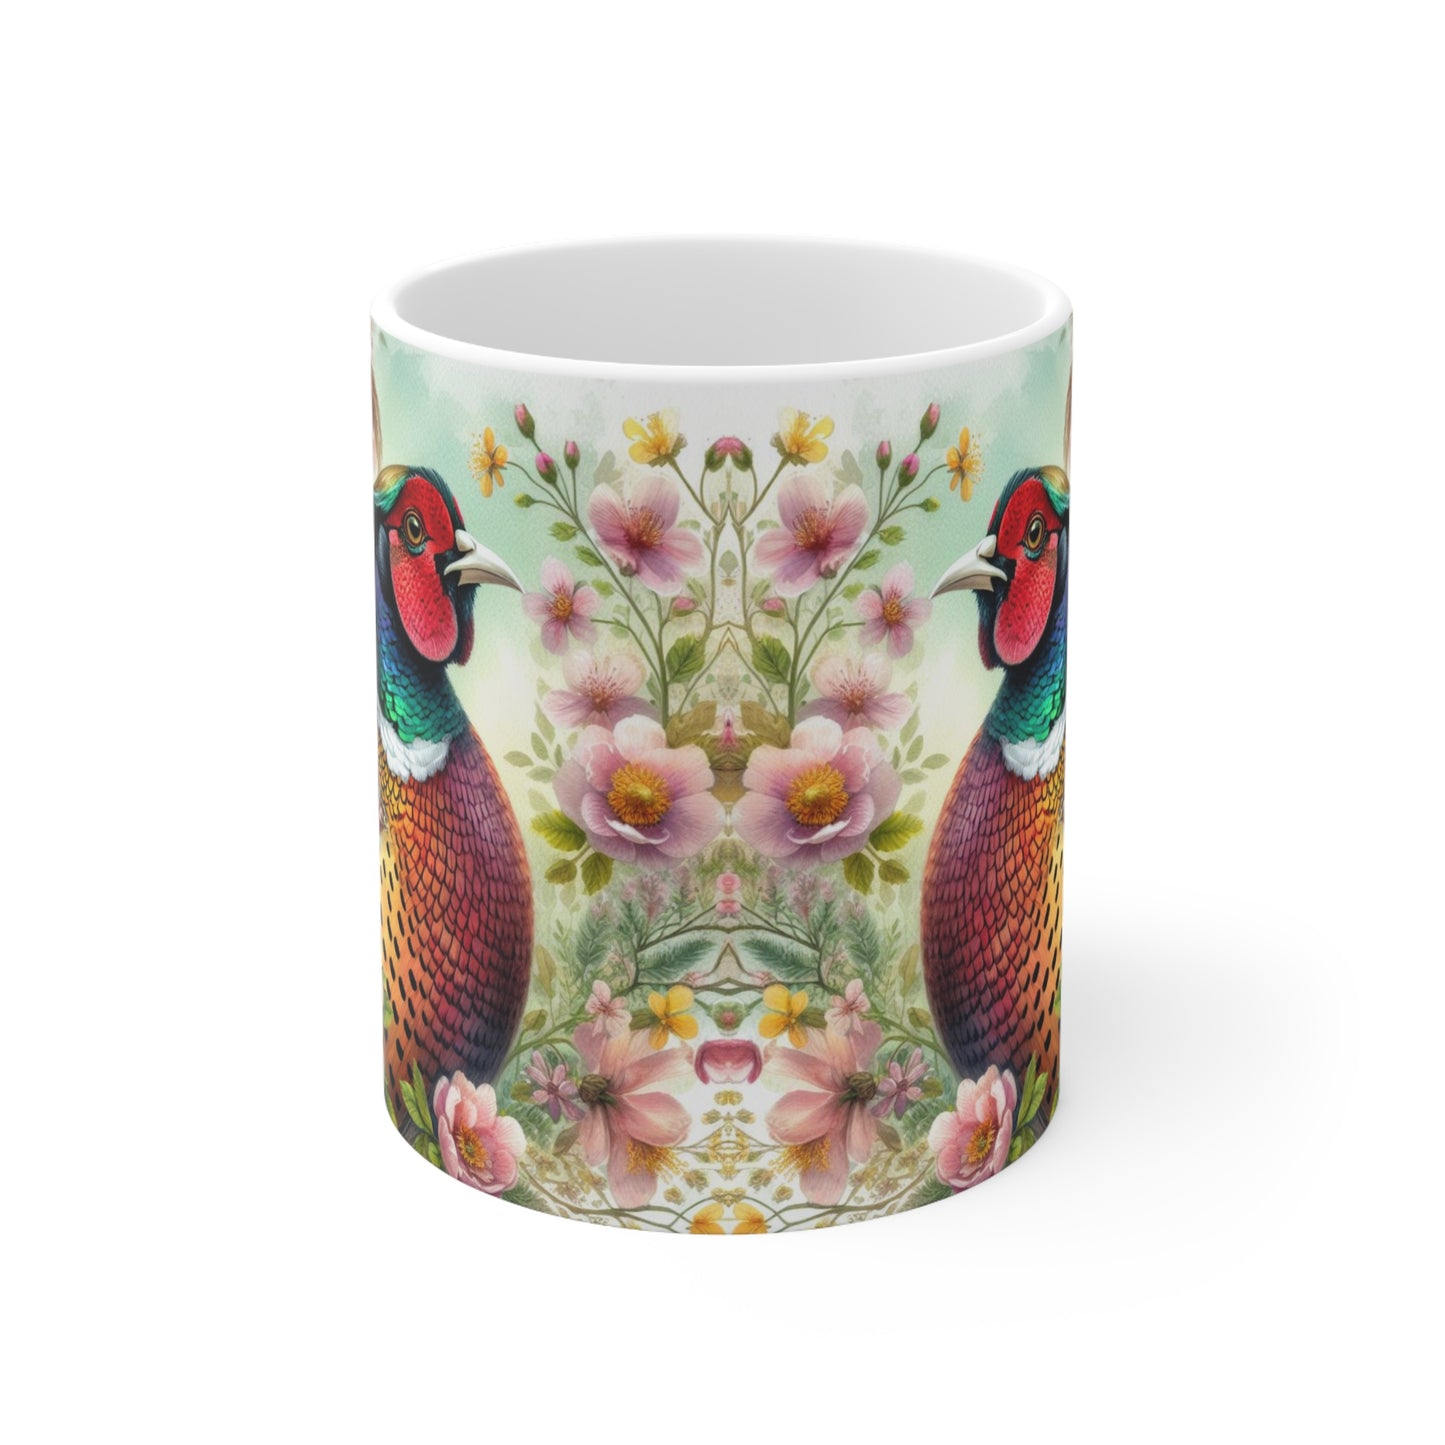 Pheasant Mug